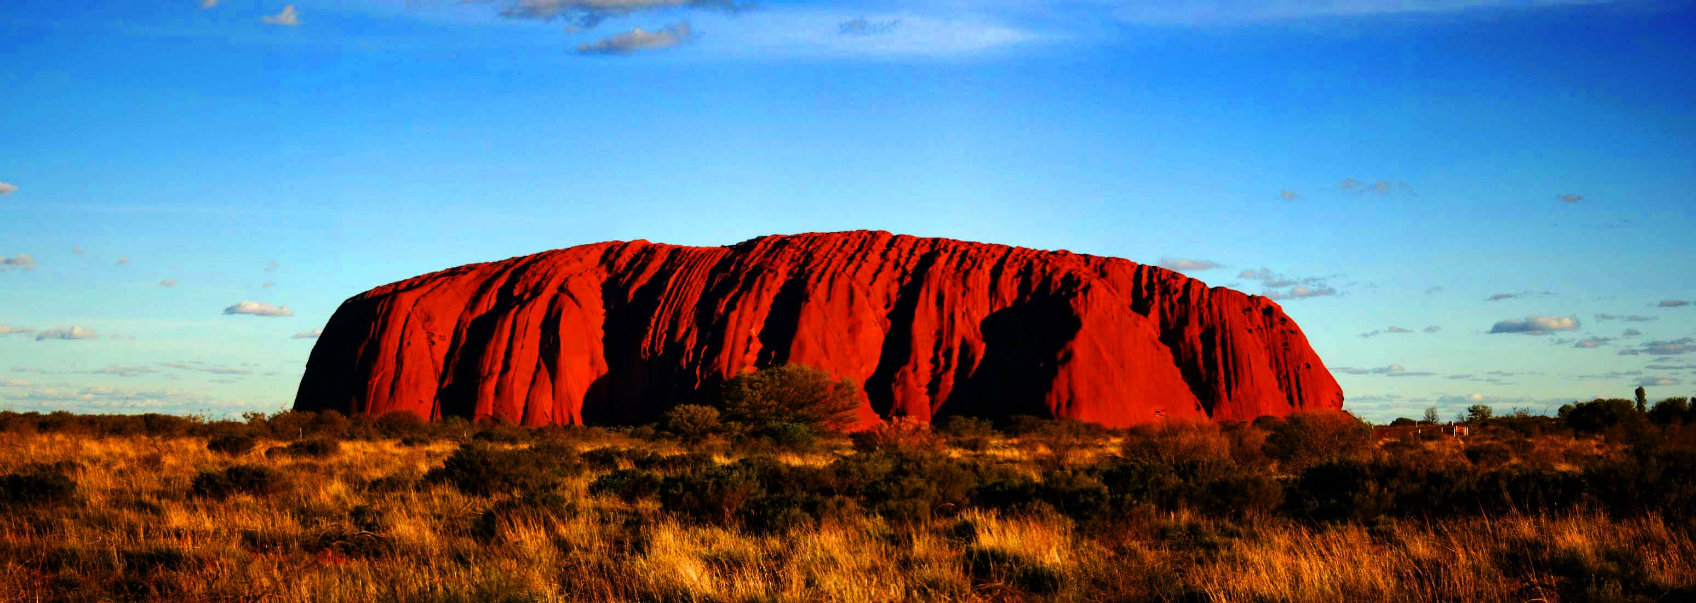 L'Ayers Rock, un lieu mythique en Australie